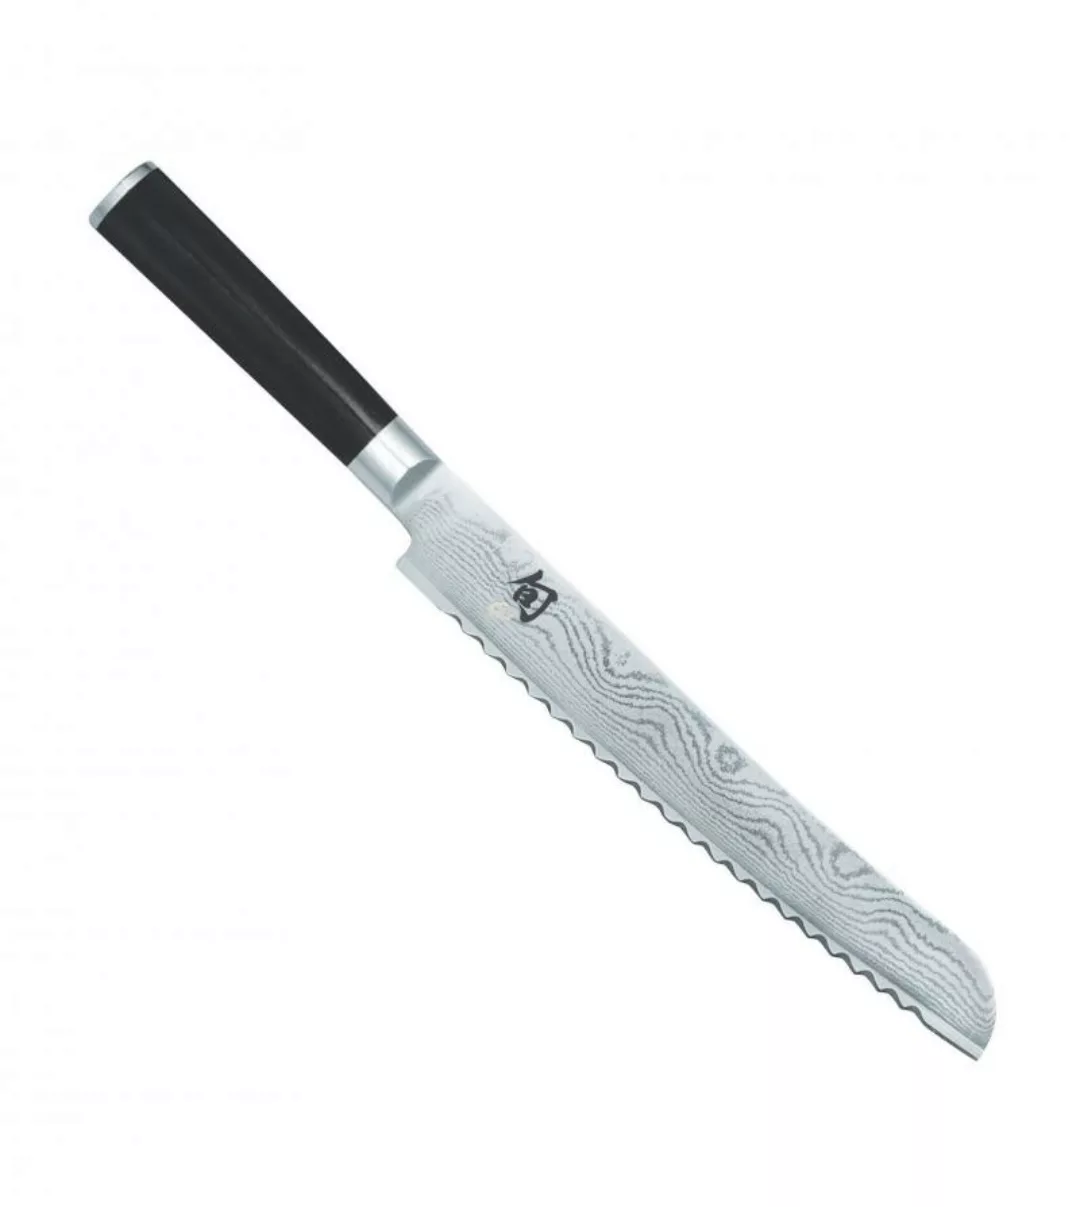 KAI Shun Classic Brotmesser 23 cm - Damaststahl - Griff Pakkaholz günstig online kaufen